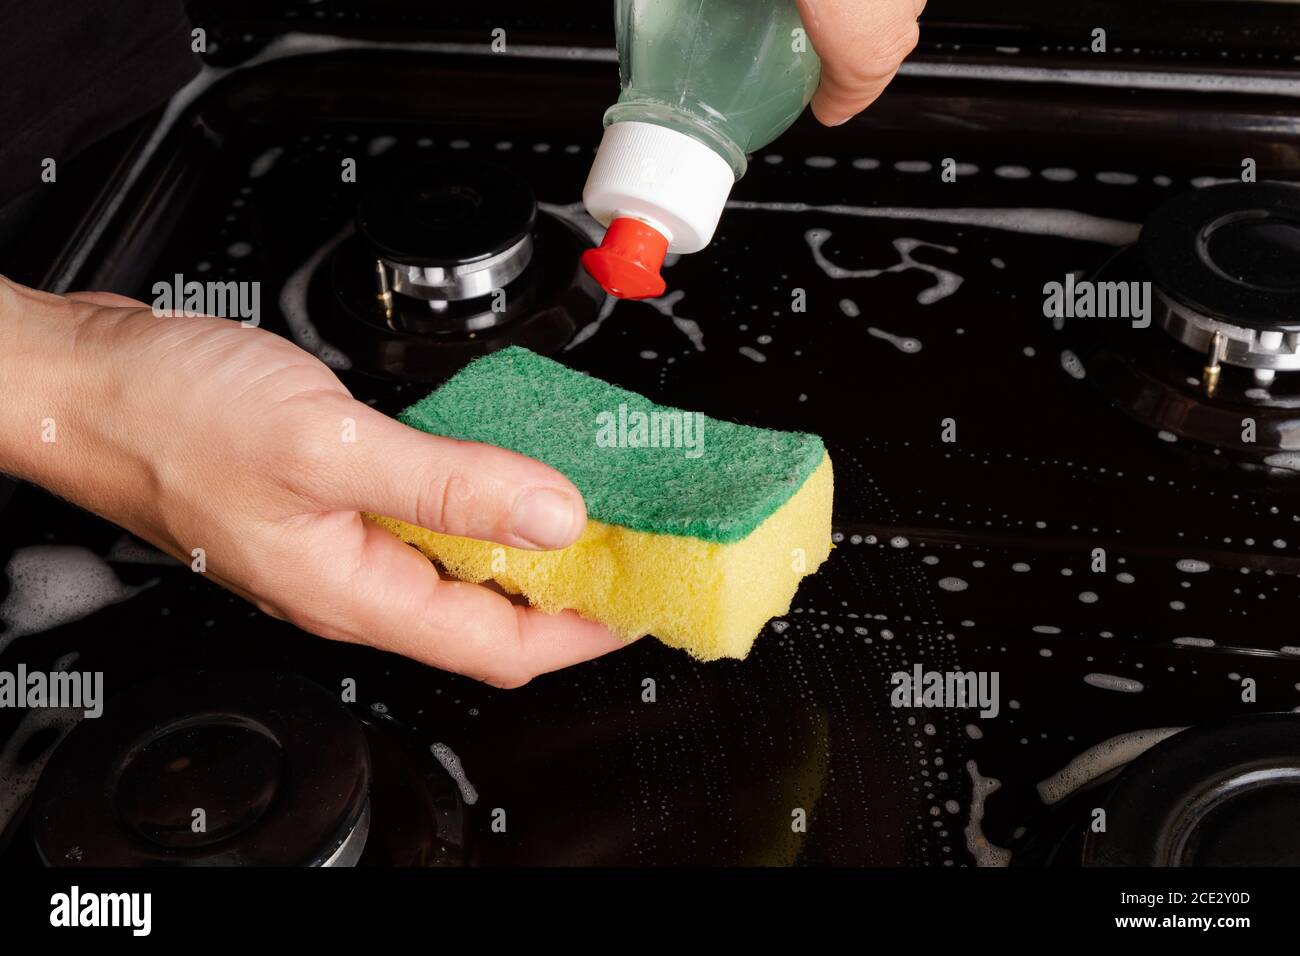 pulizia della stufa a gas con acqua saponata. pulizia della cucina. Foto Stock